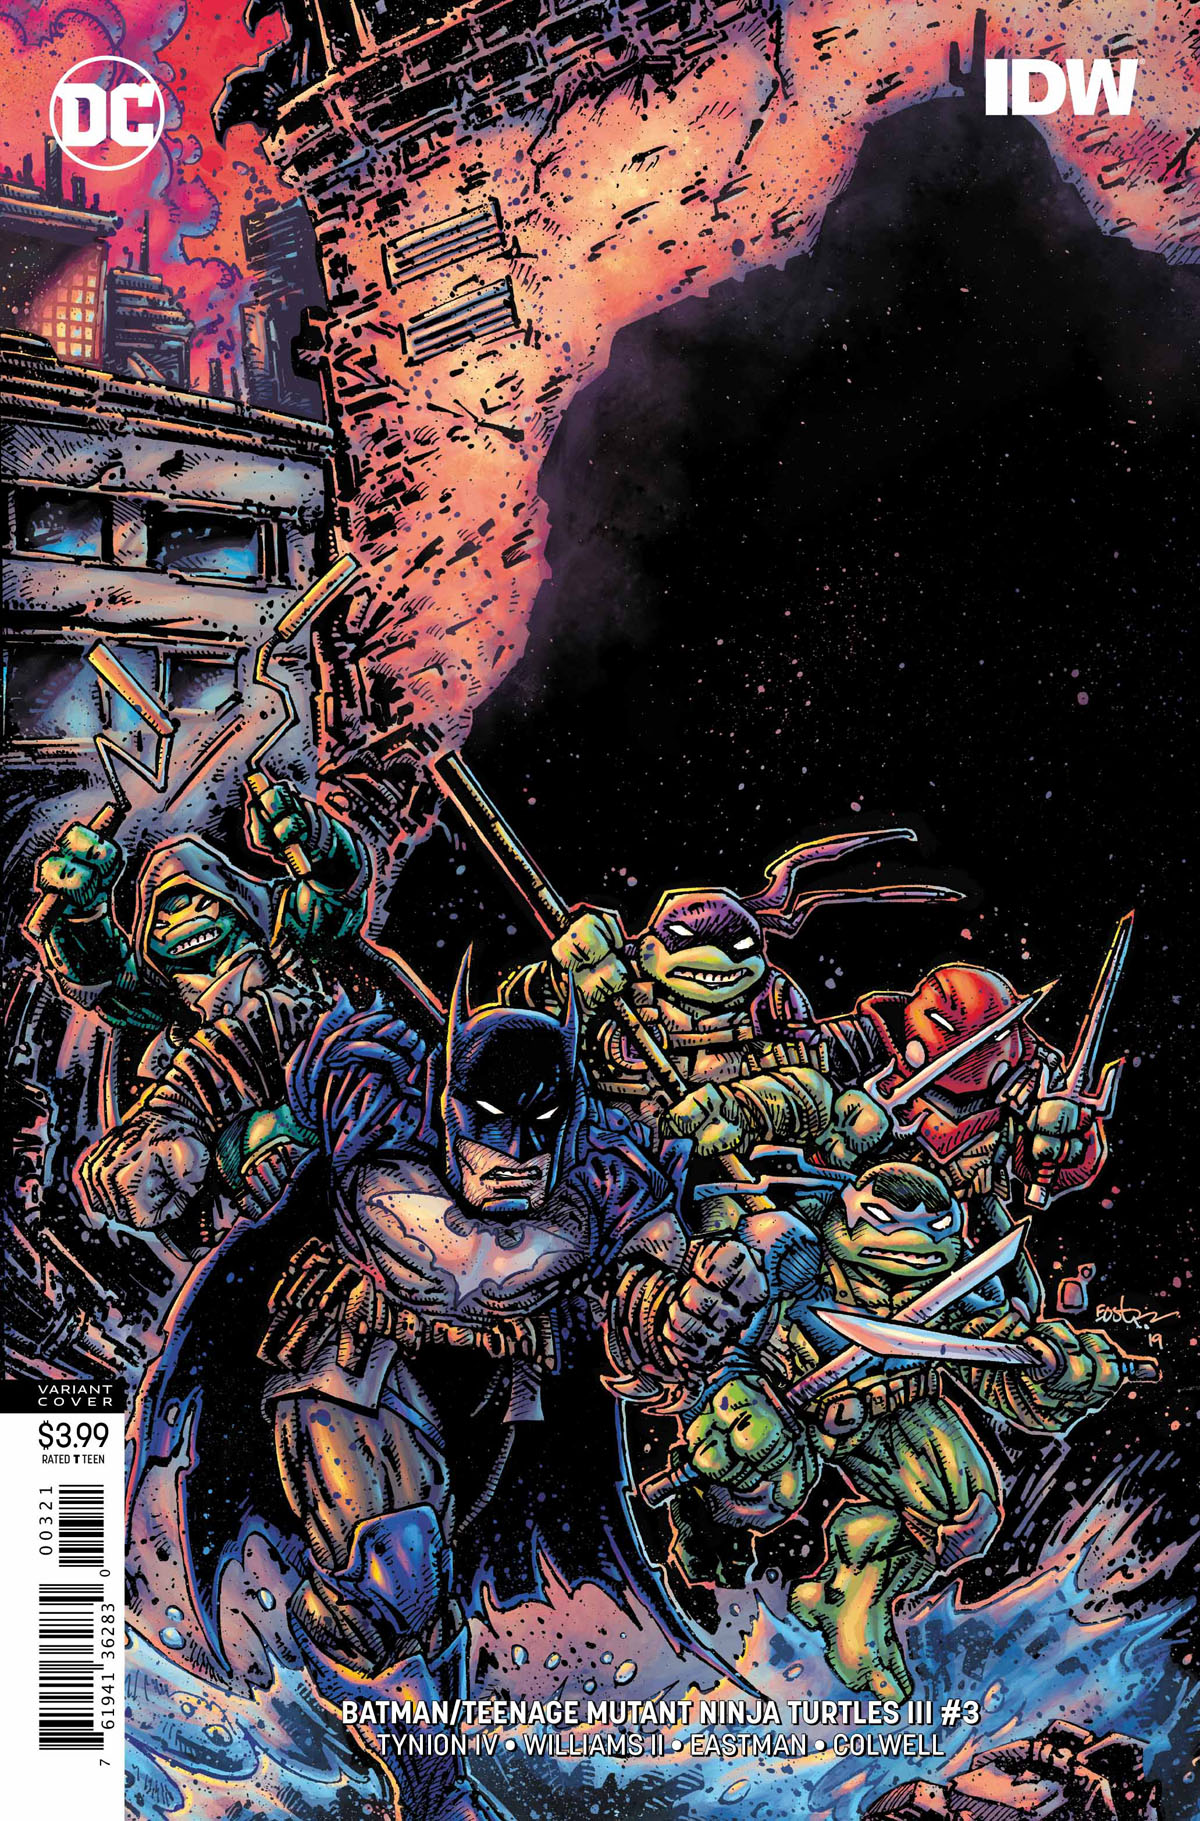 Batman/Teenage Mutant Ninja Turtles III #3 variant cover